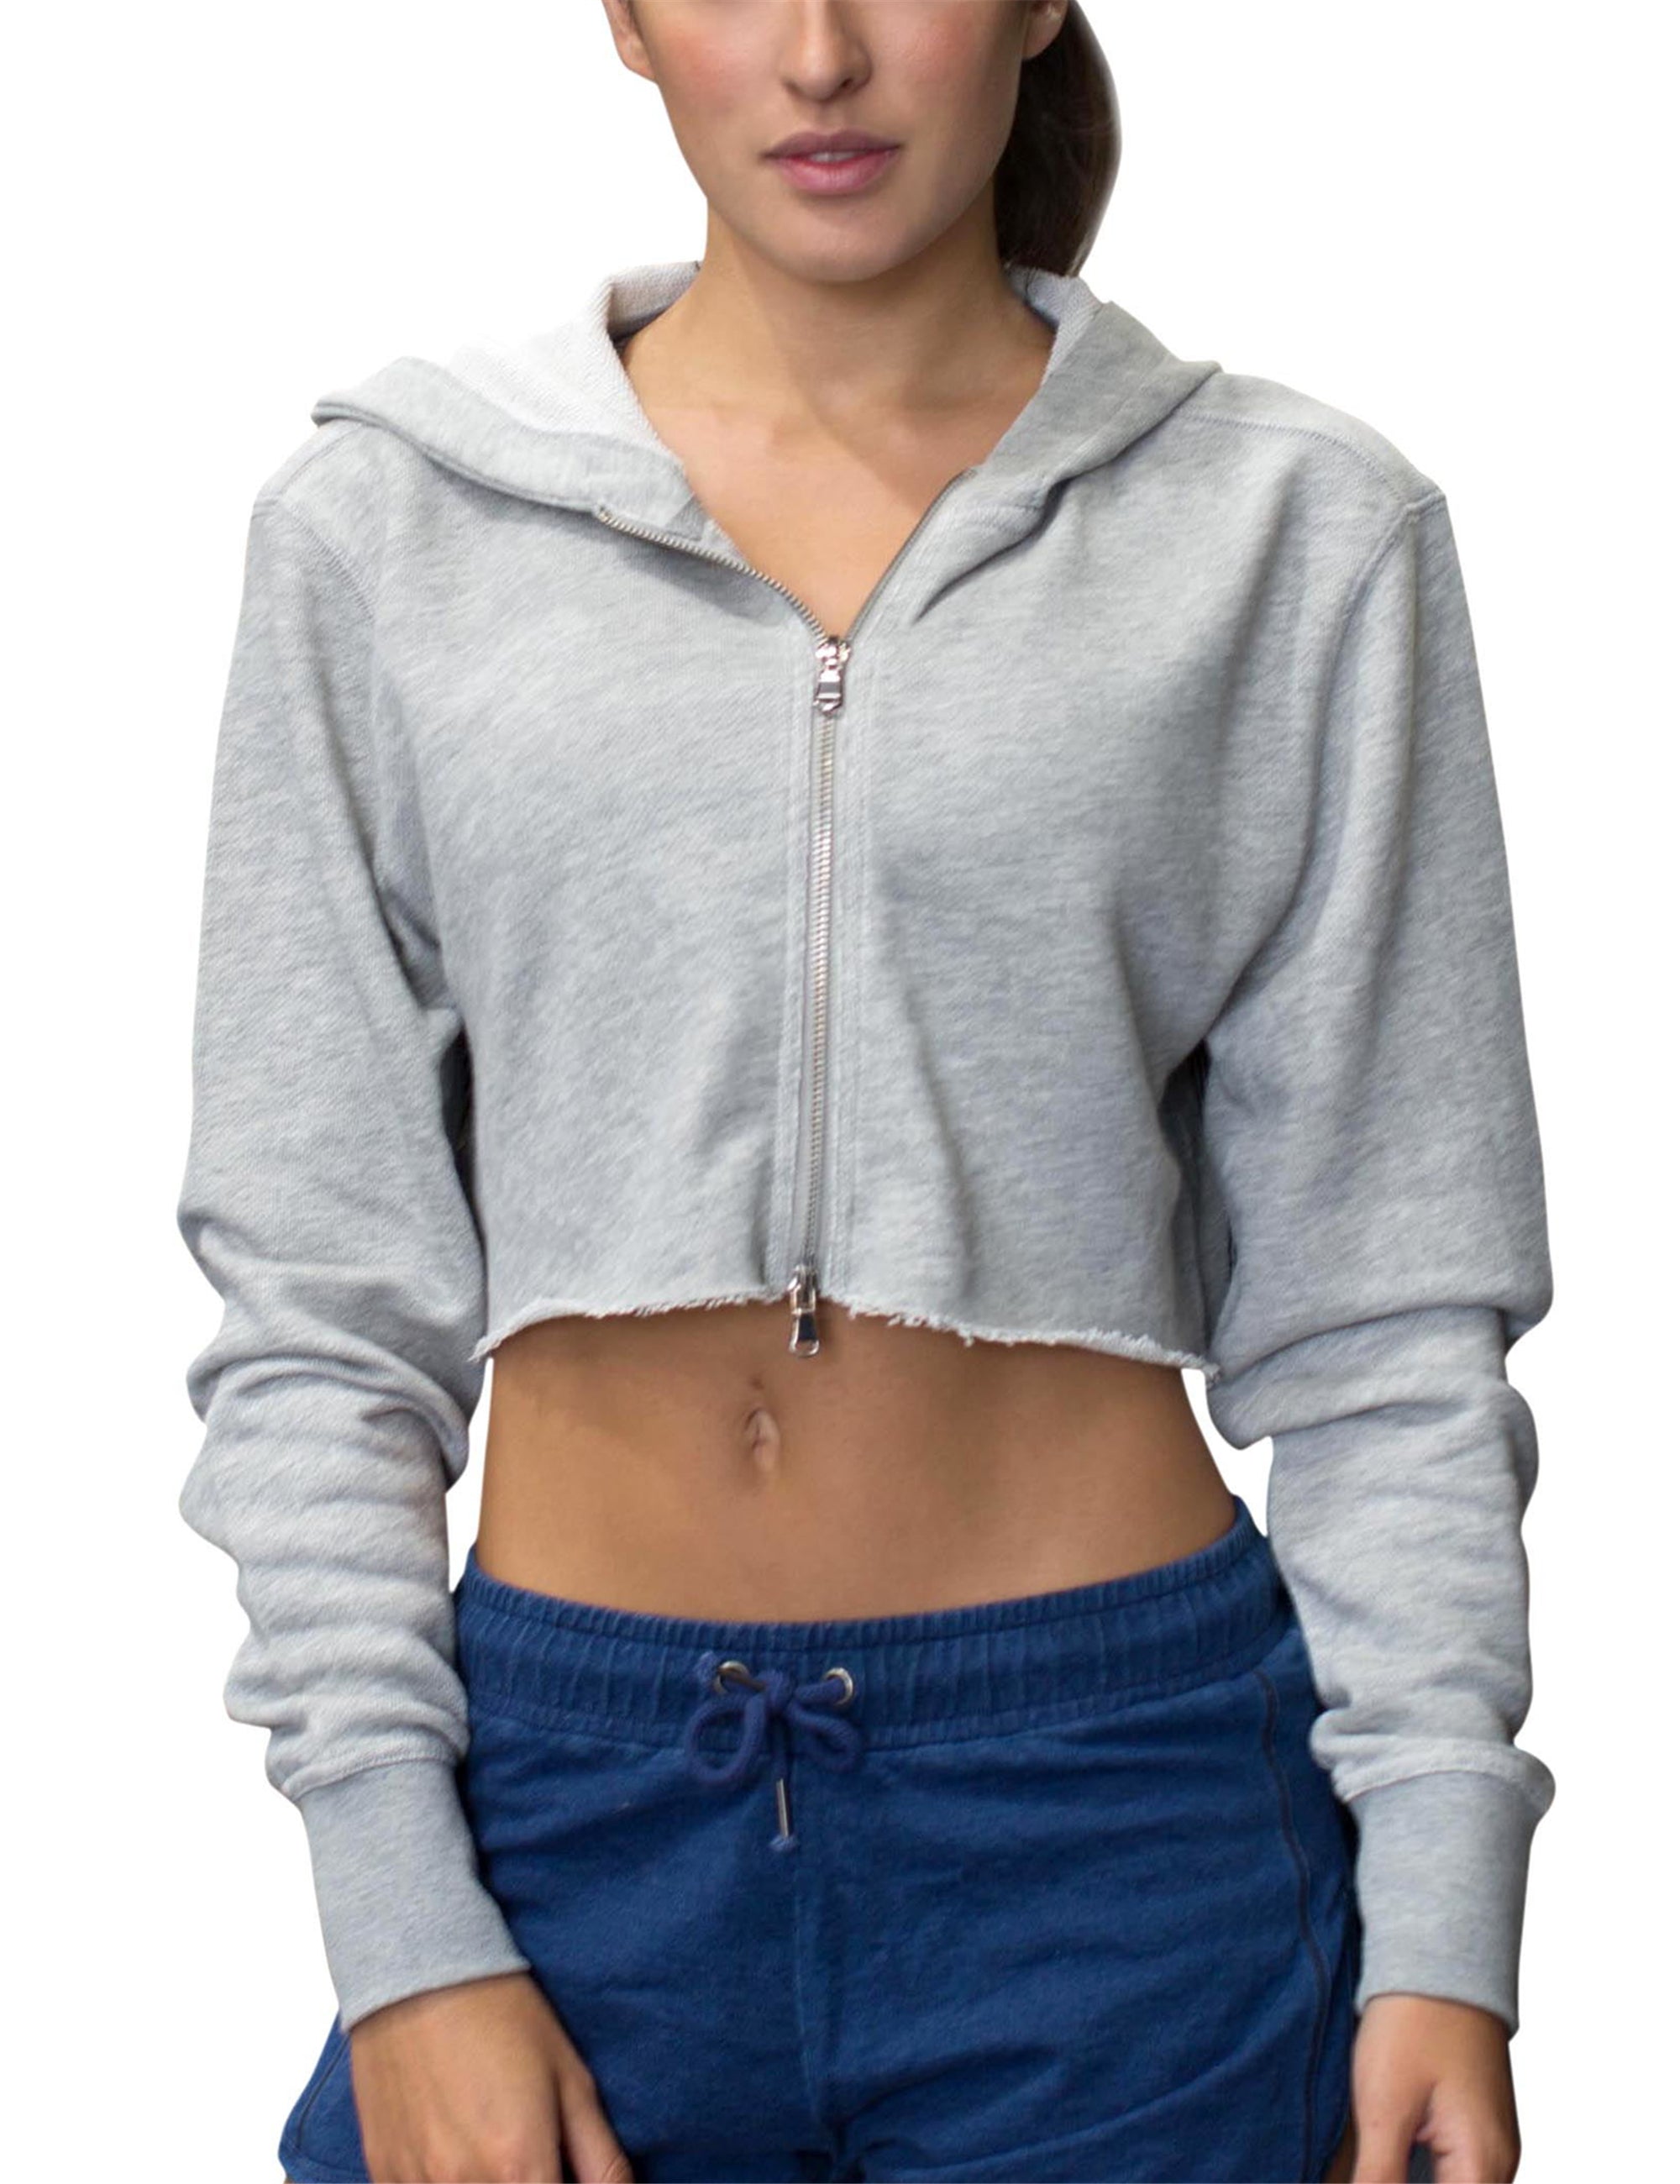 workout crop top hoodie